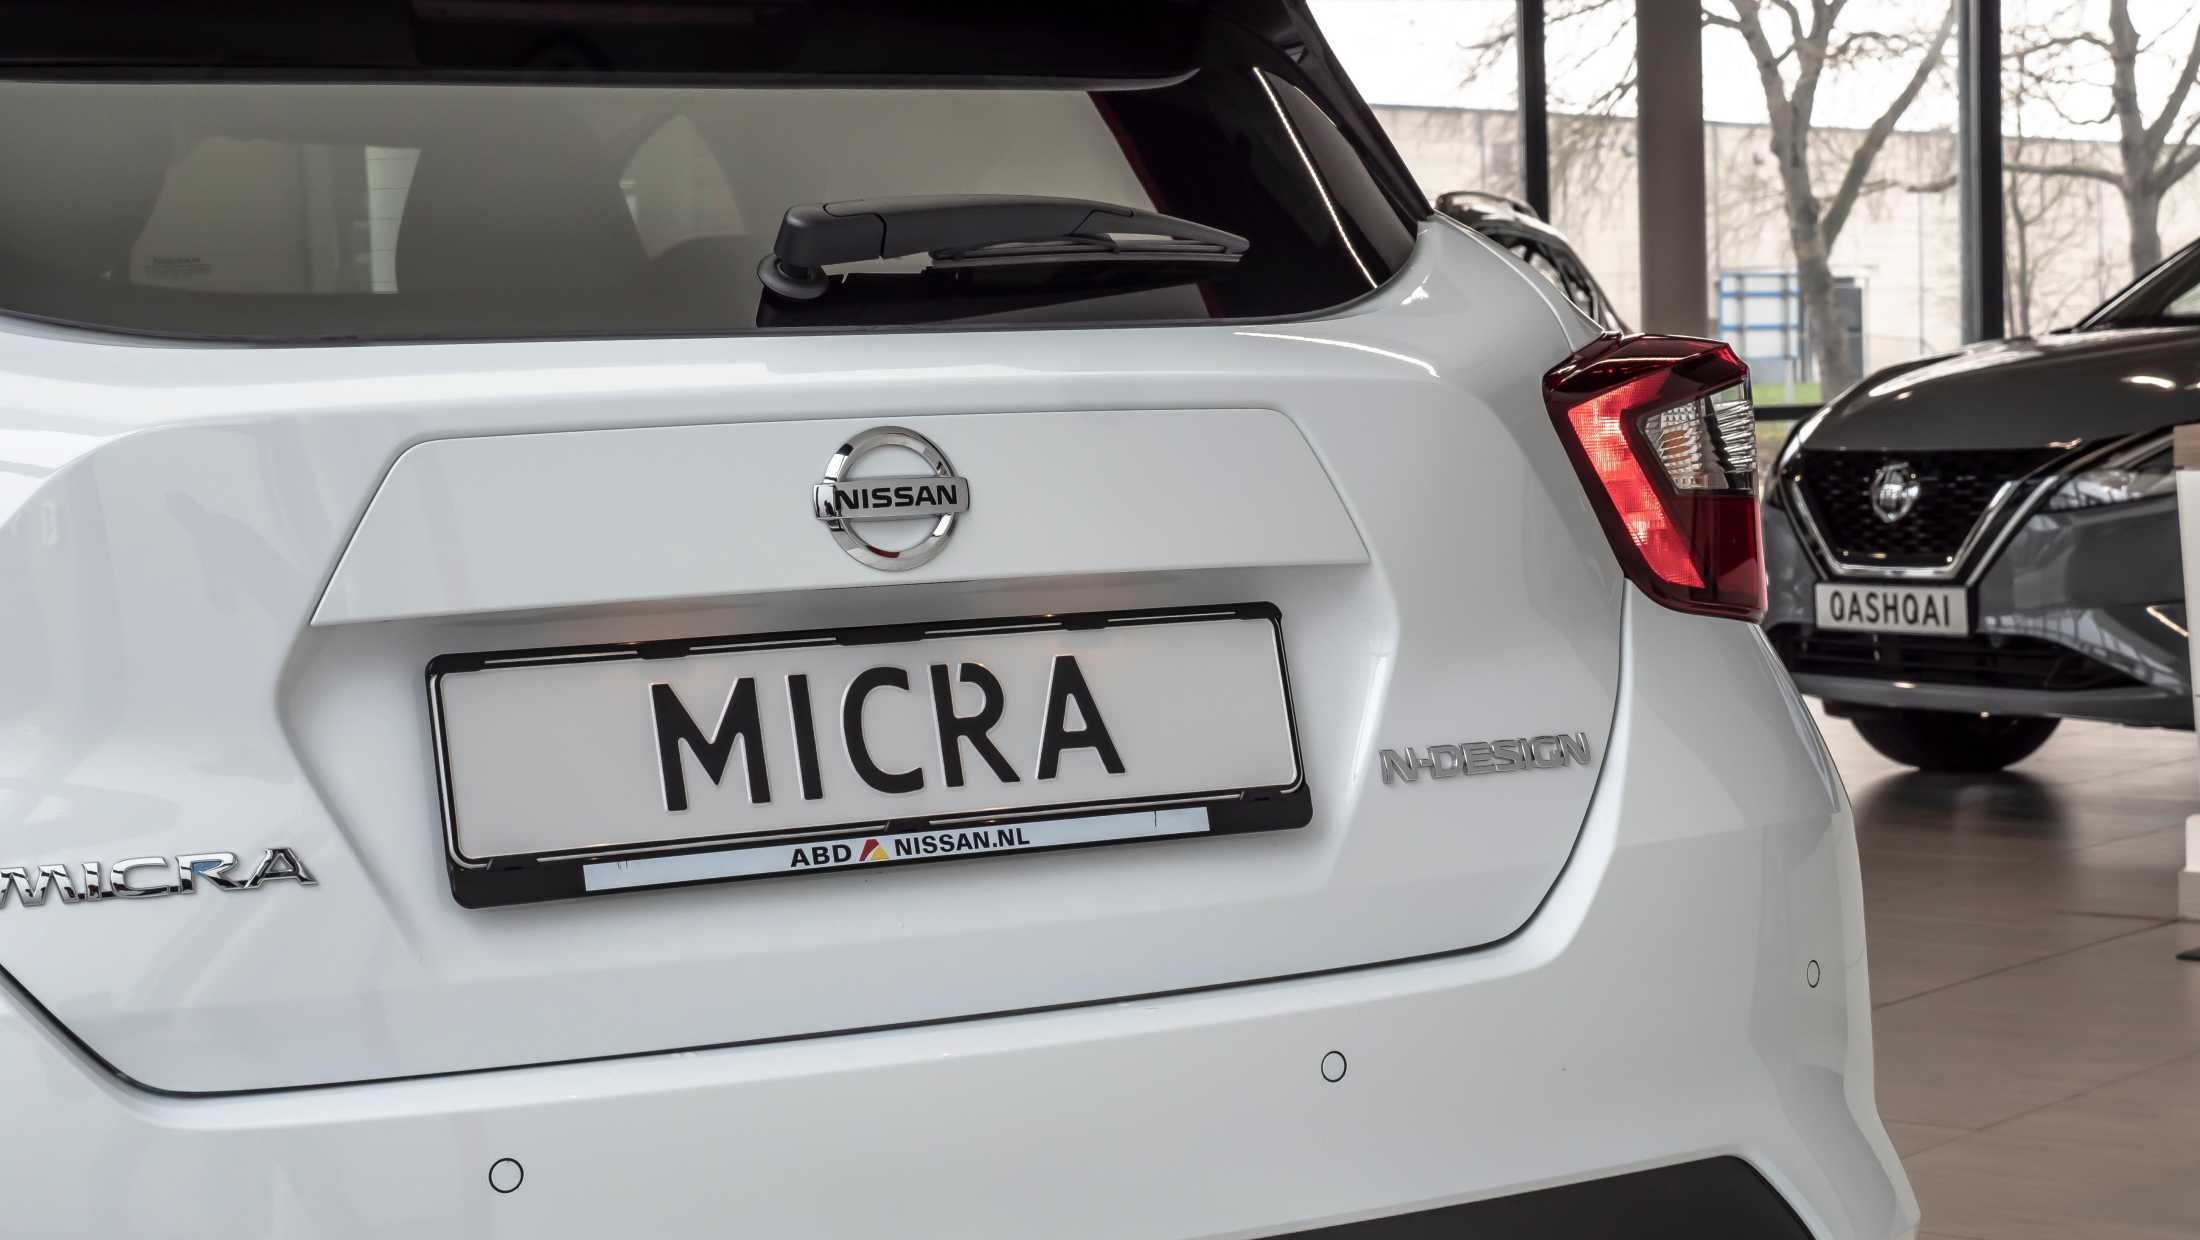 ABD Nissan - Micra voorraadactie - zwart exterieurpakket